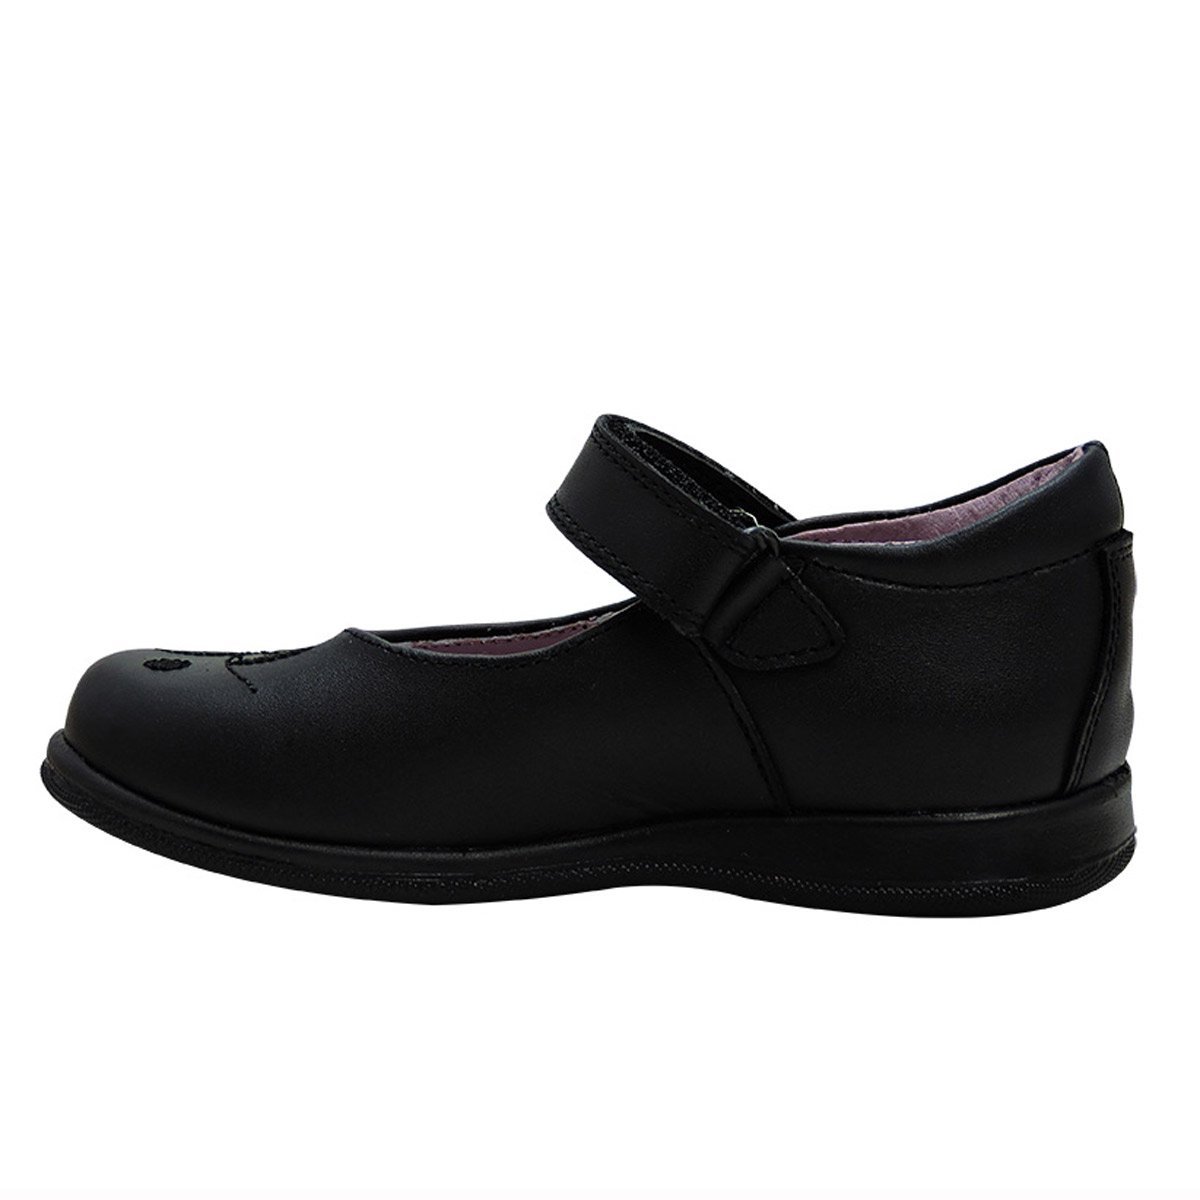 Zapato Escolar Velcro 15-17 Blasito Mod. 5124